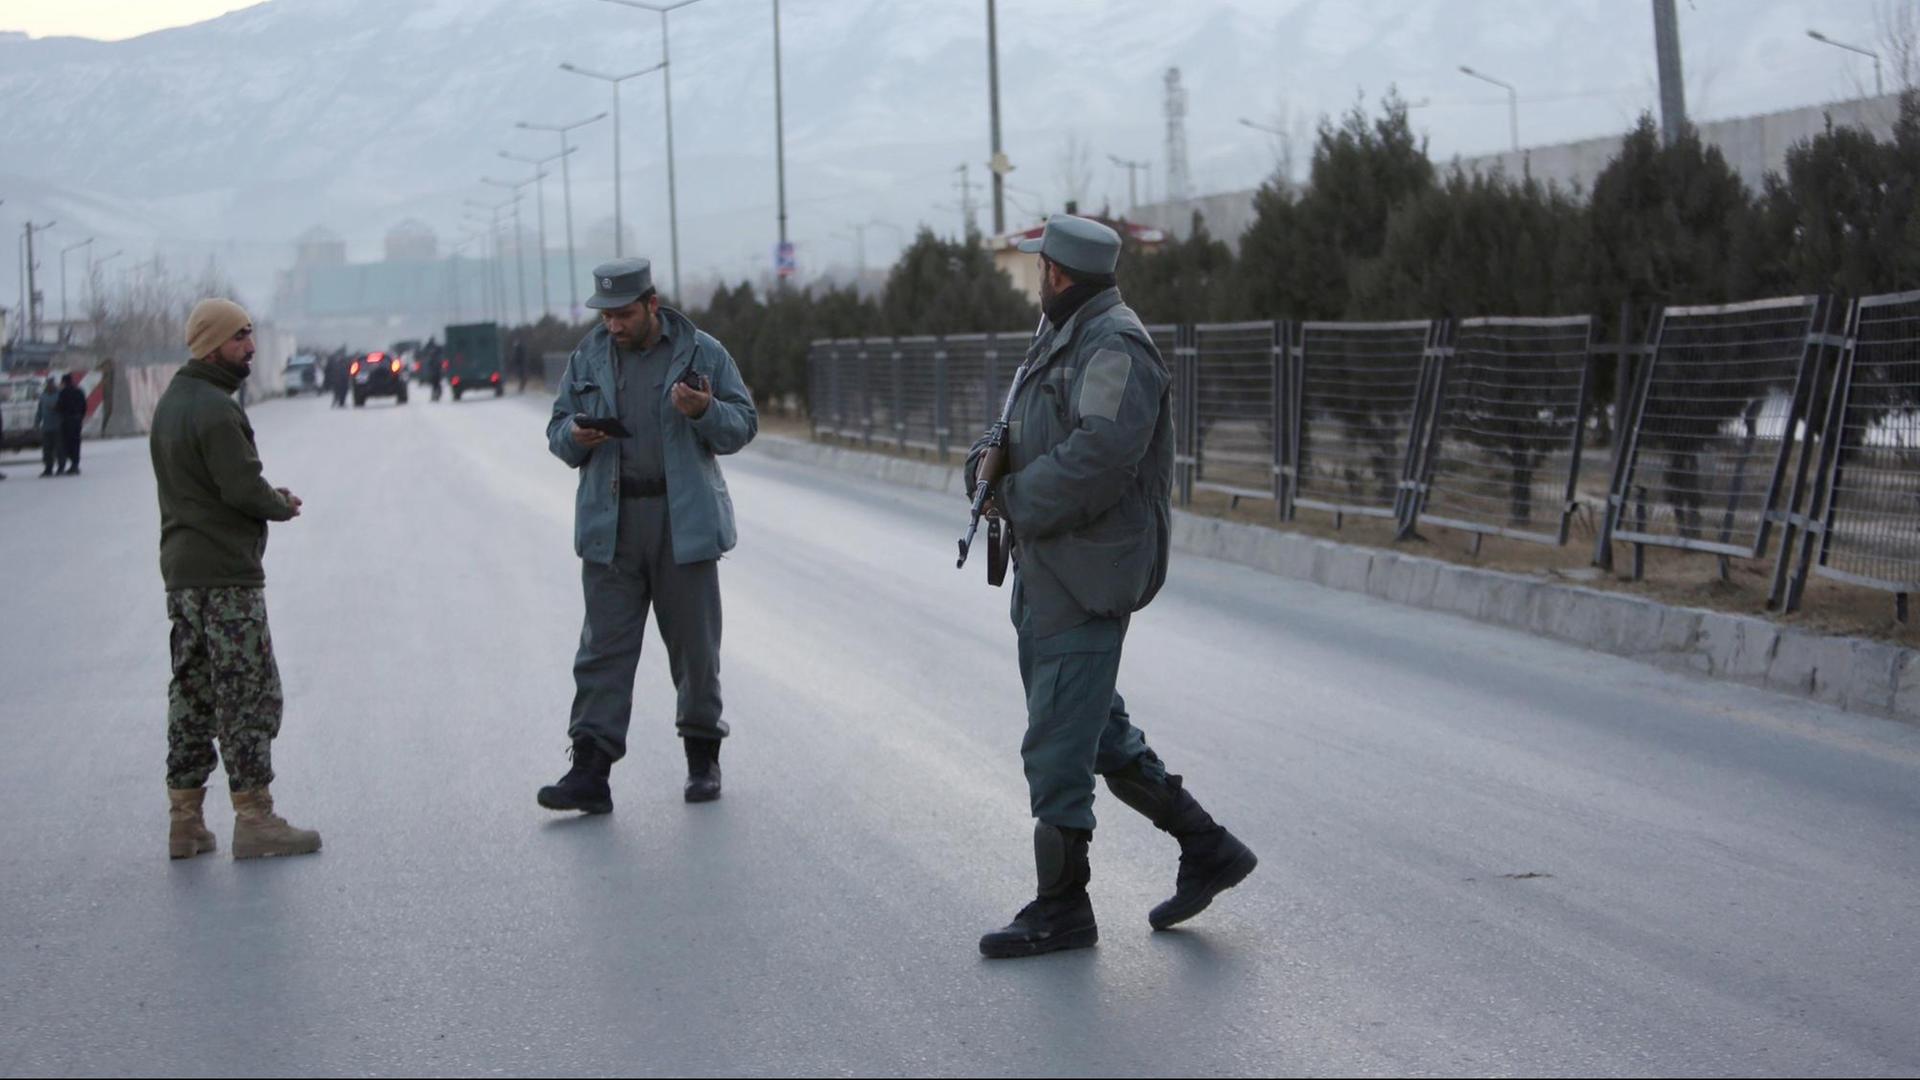 Mitglieder der afghanischen Sicherheitskräfte stehen am 10.01.2017 nahe des Ortes zweier Explosionen in Kabul (Afghanistan). Bei einem doppelten Autobombenanschlag könnten im Zentrum der afghanischen Hauptstadt Kabul nach Medienberichten bis zu 50 Menschen getötet worden sein.